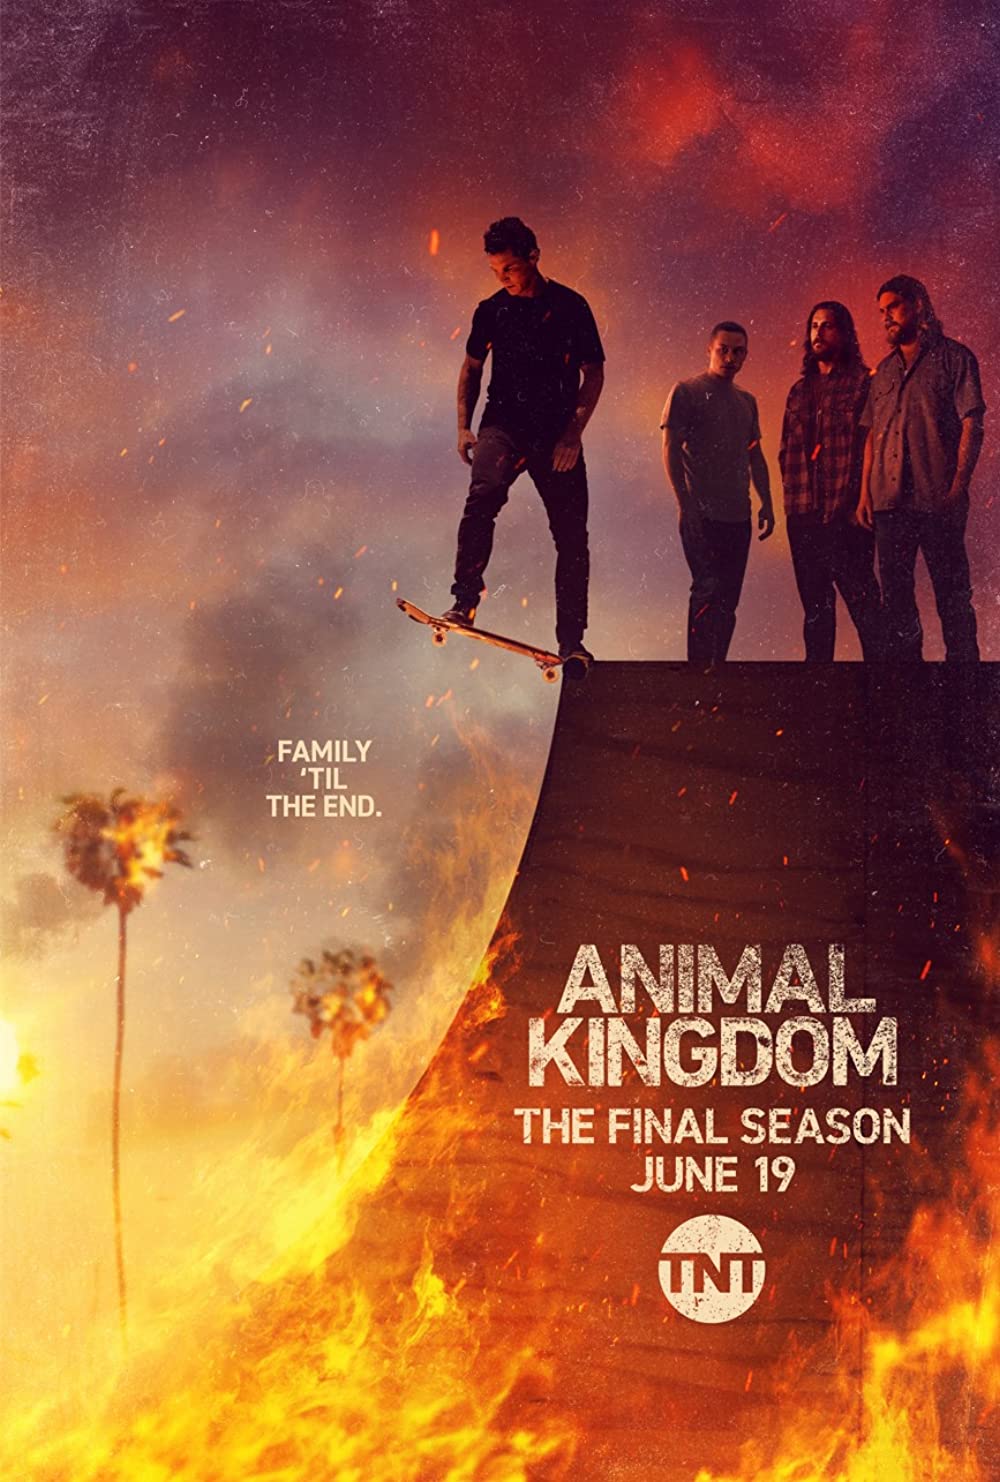 ดูหนังออนไลน์ Animal Kingdom Season 1 EP.4 แอนนิเมิล คิงด้อม ซีซั่น 1 ตอนที่ 4 (ซับไทย)